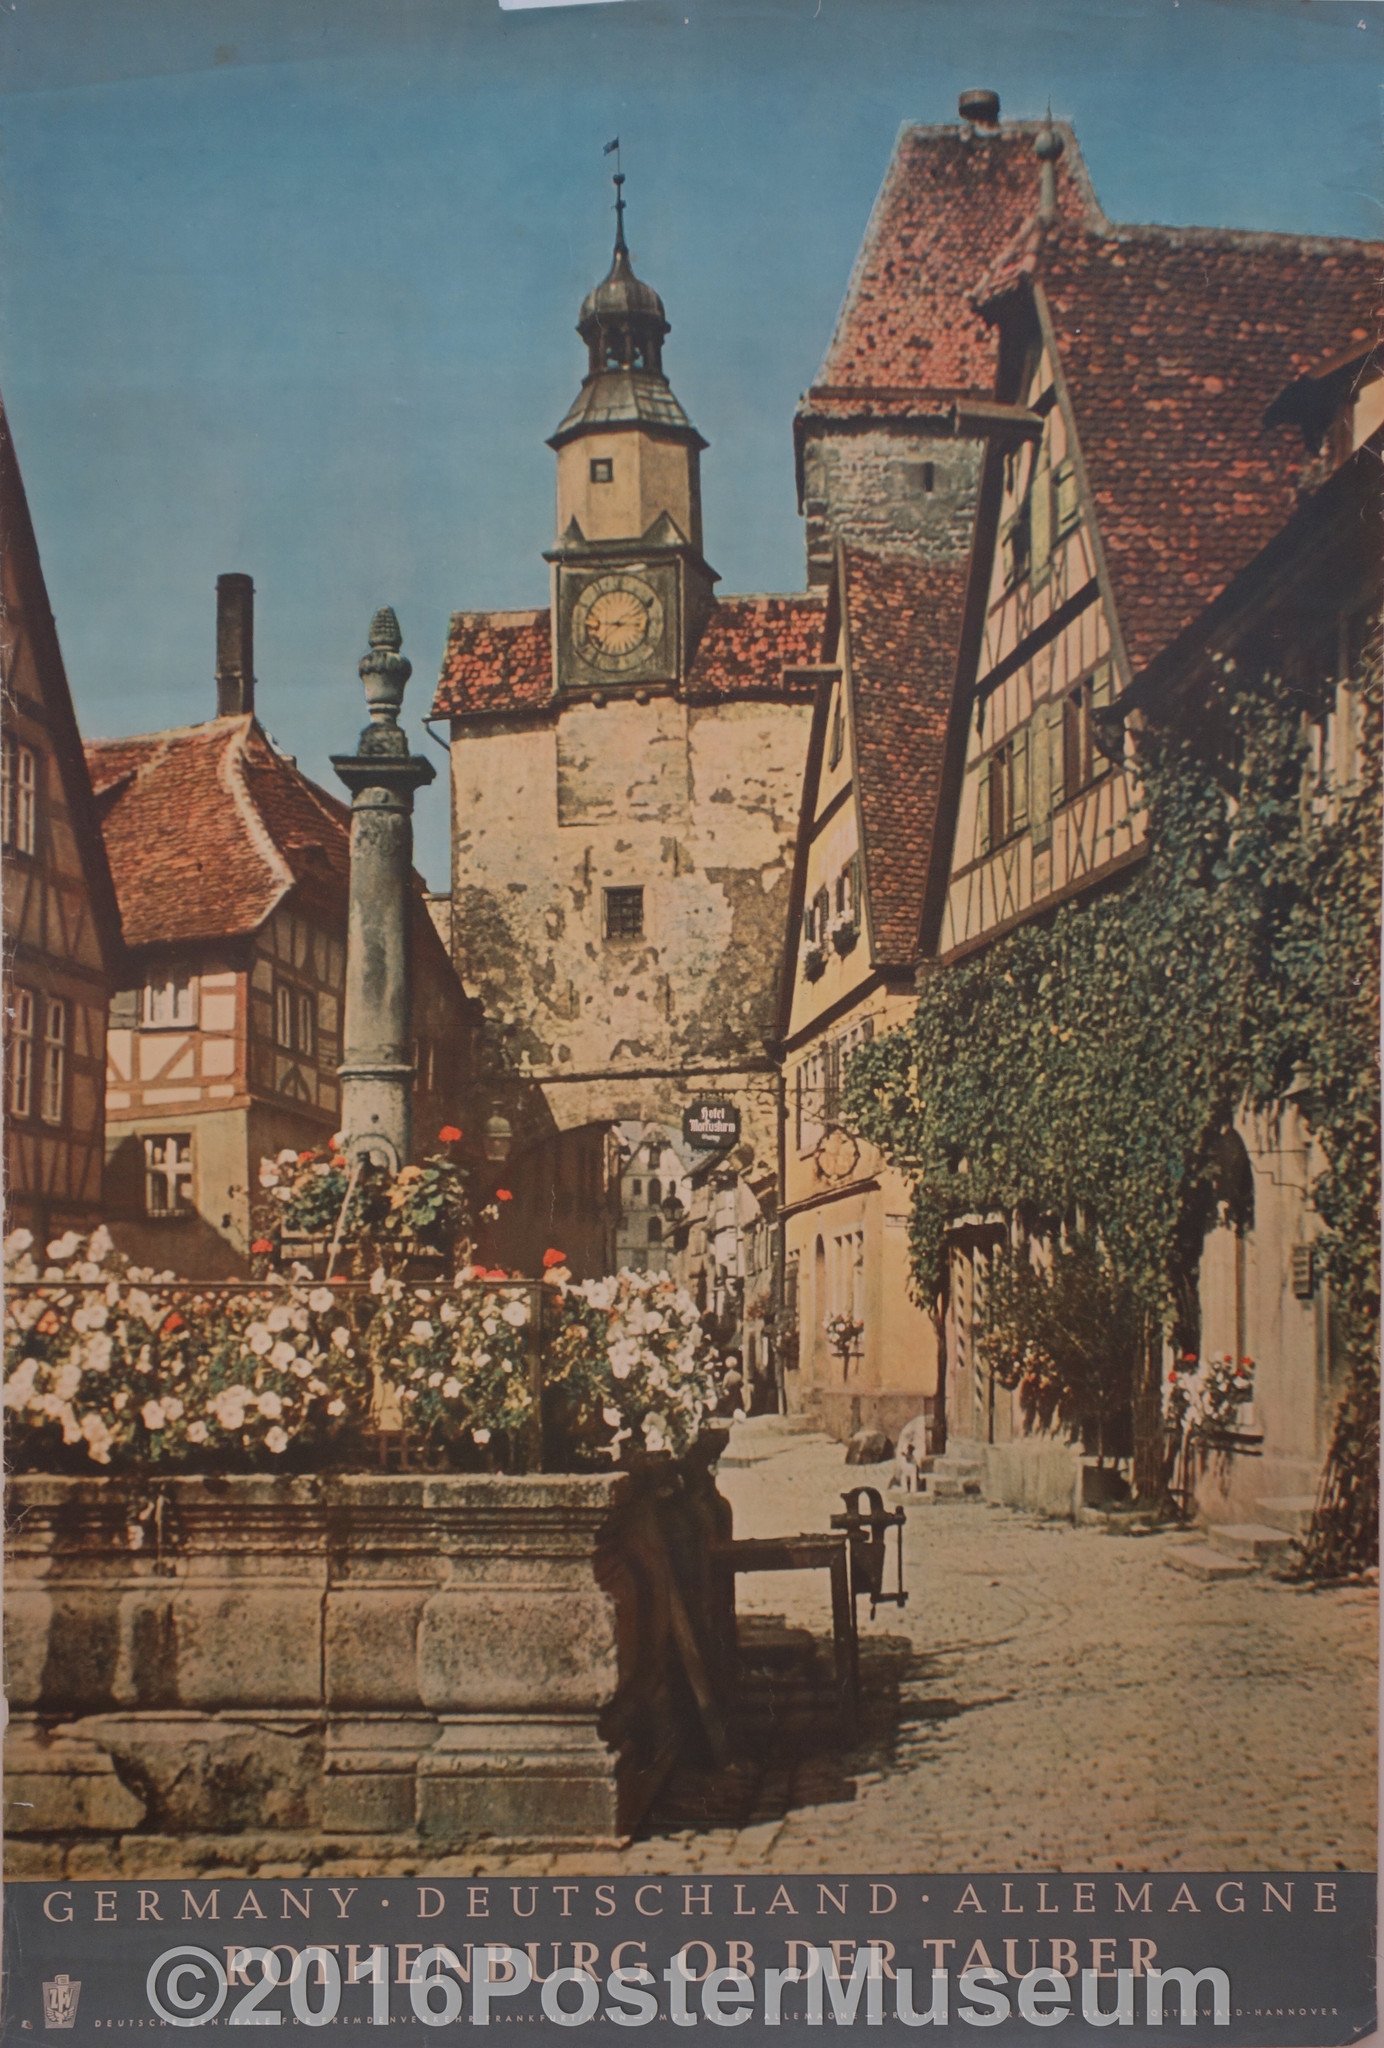 Rothenburg Ob Der Tauber – Poster Museum